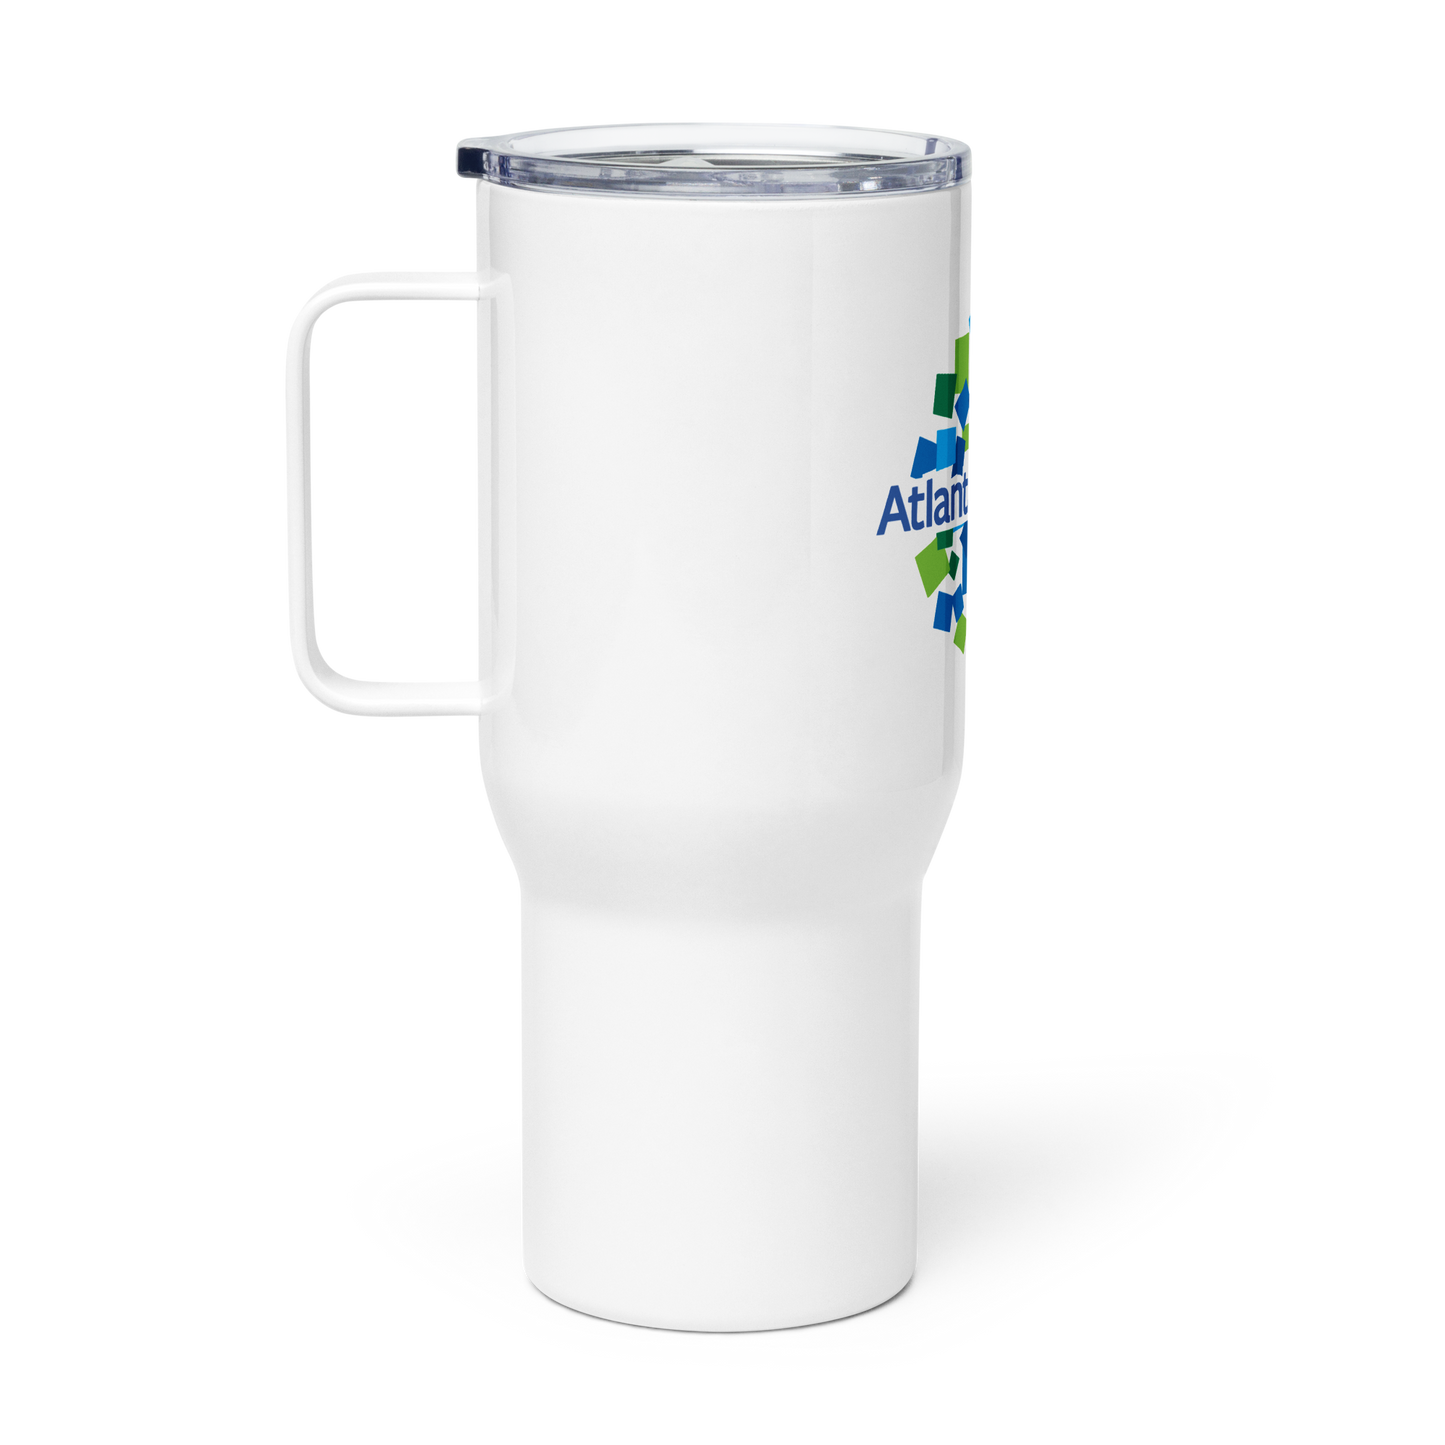 Beltline travel mug with a handle